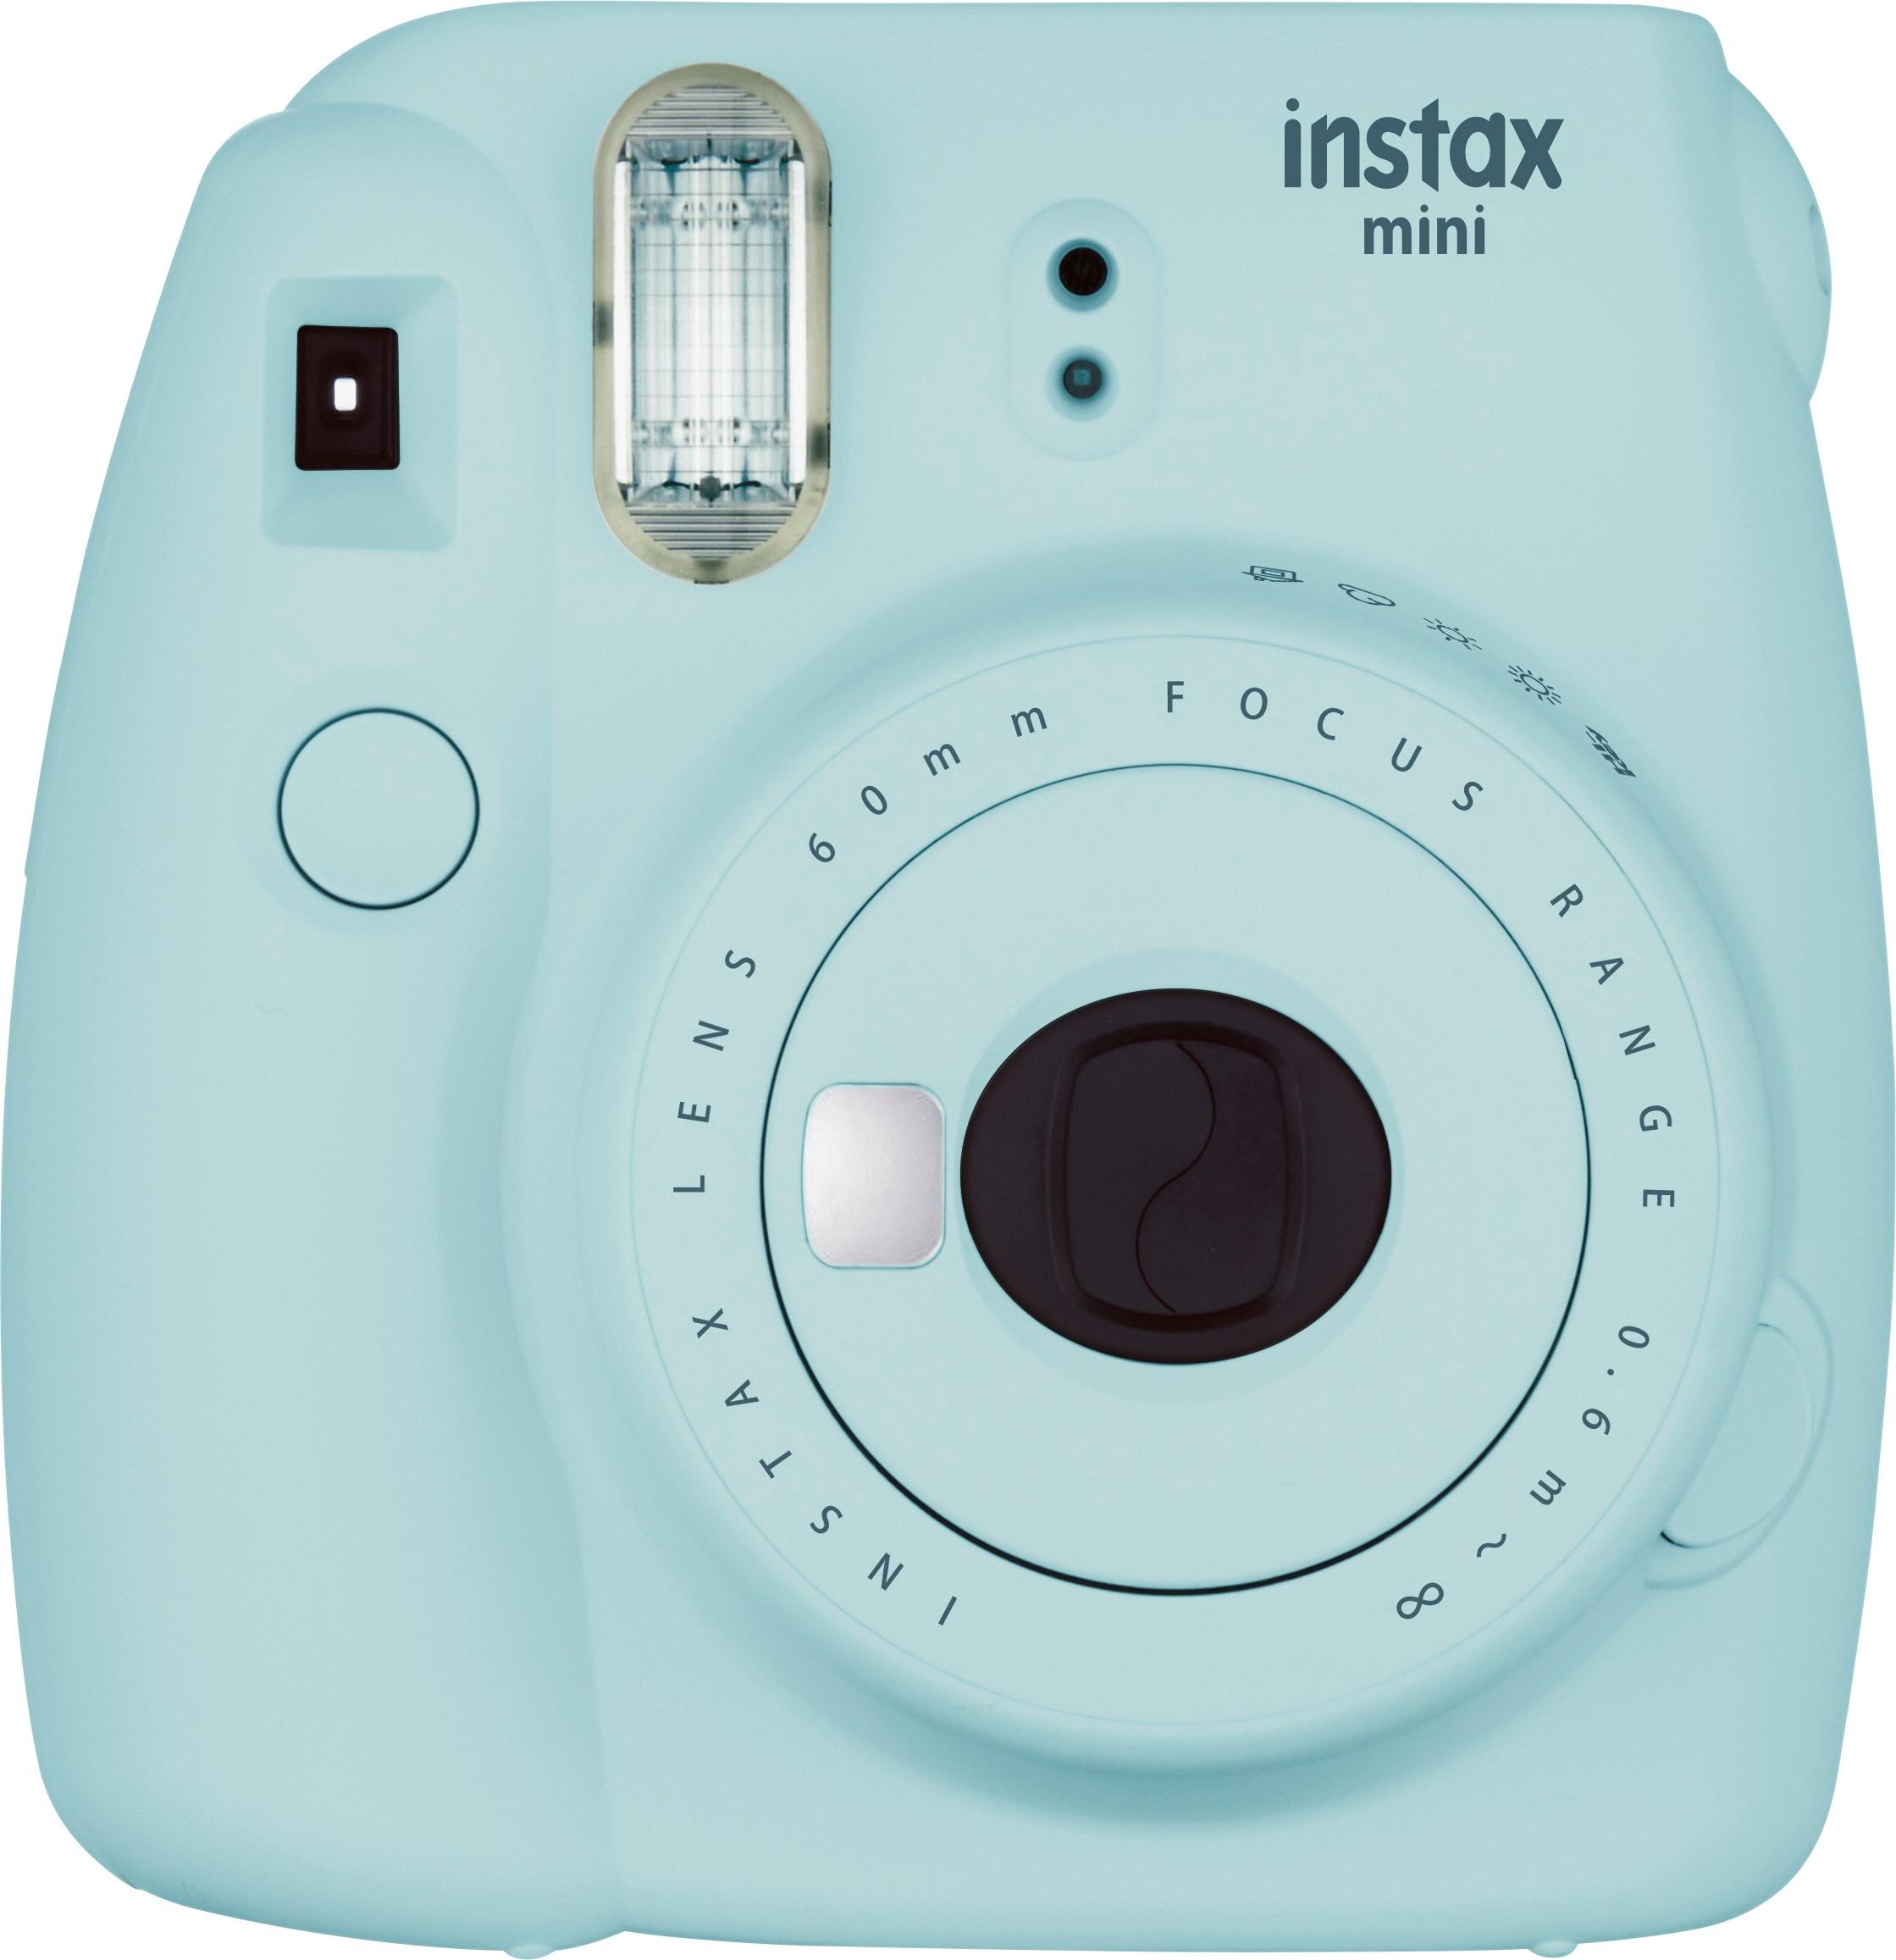 Uitstekend Netjes Uitlijnen Best Buy: Fujifilm instax mini 9 Instant Film Camera Ice Blue 16550643